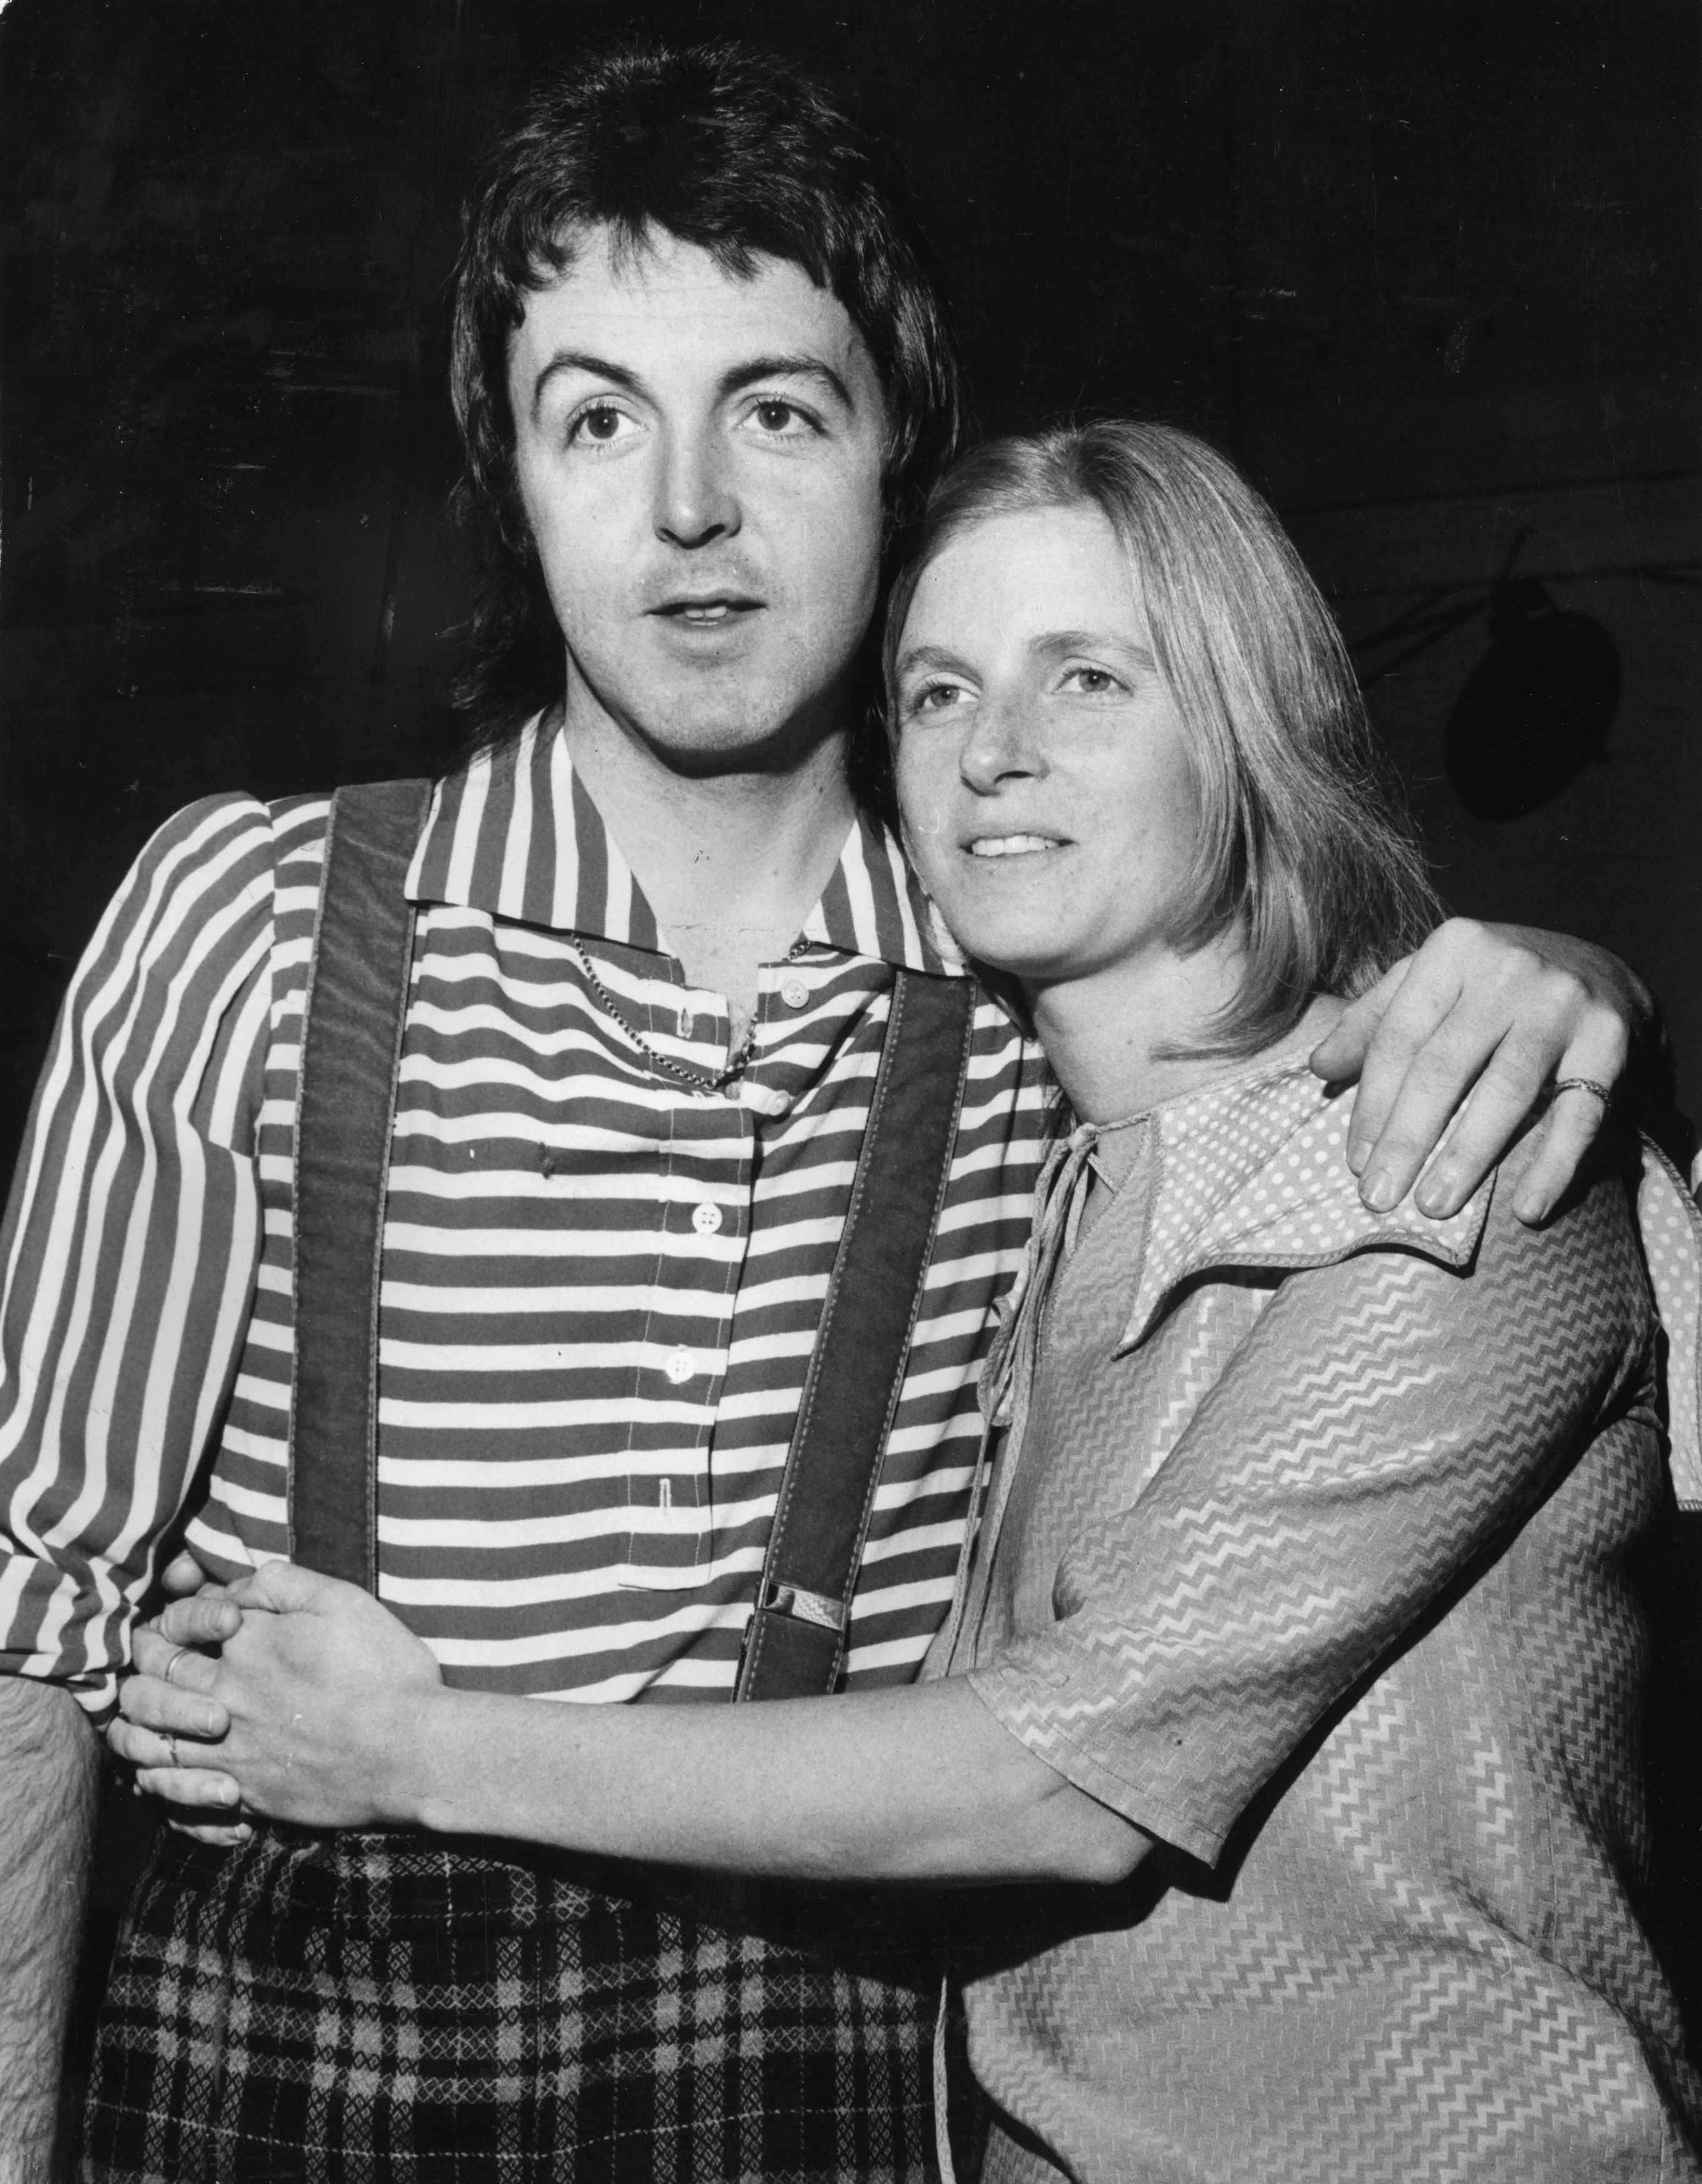 Paul McCartney y su esposa Linda, quienes actuaron juntos como Wings después de la disolución de los Beatles el 2 de diciembre de 1972 | Foto: Getty Images